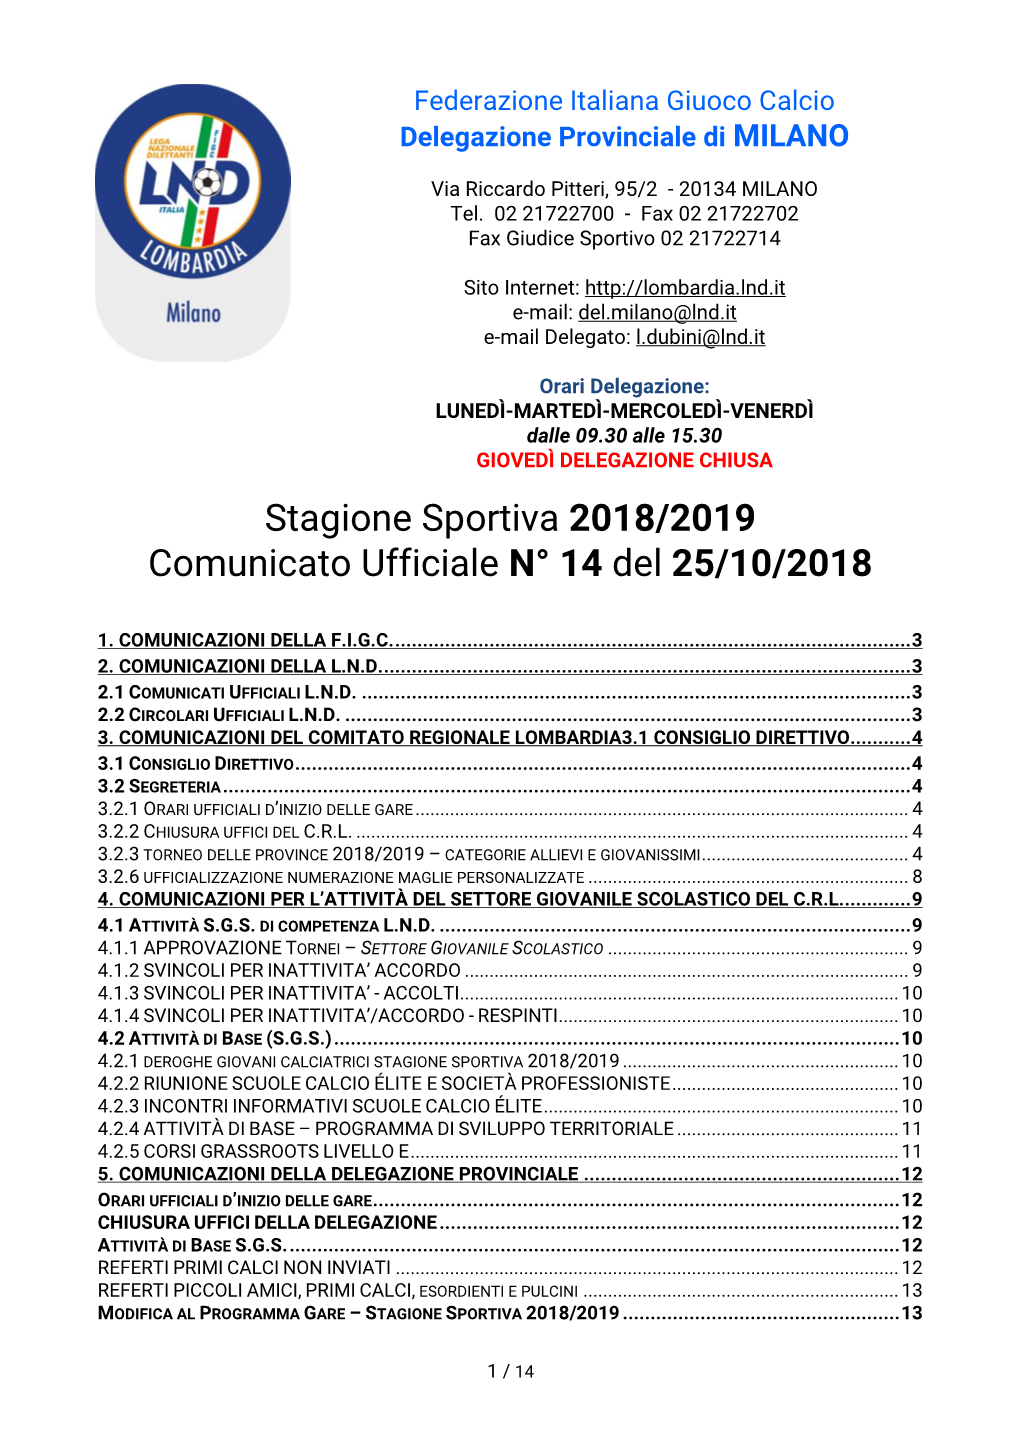 Stagione Sportiva 2018/2019 Comunicato Ufficiale N° 14 Del 25/10/2018